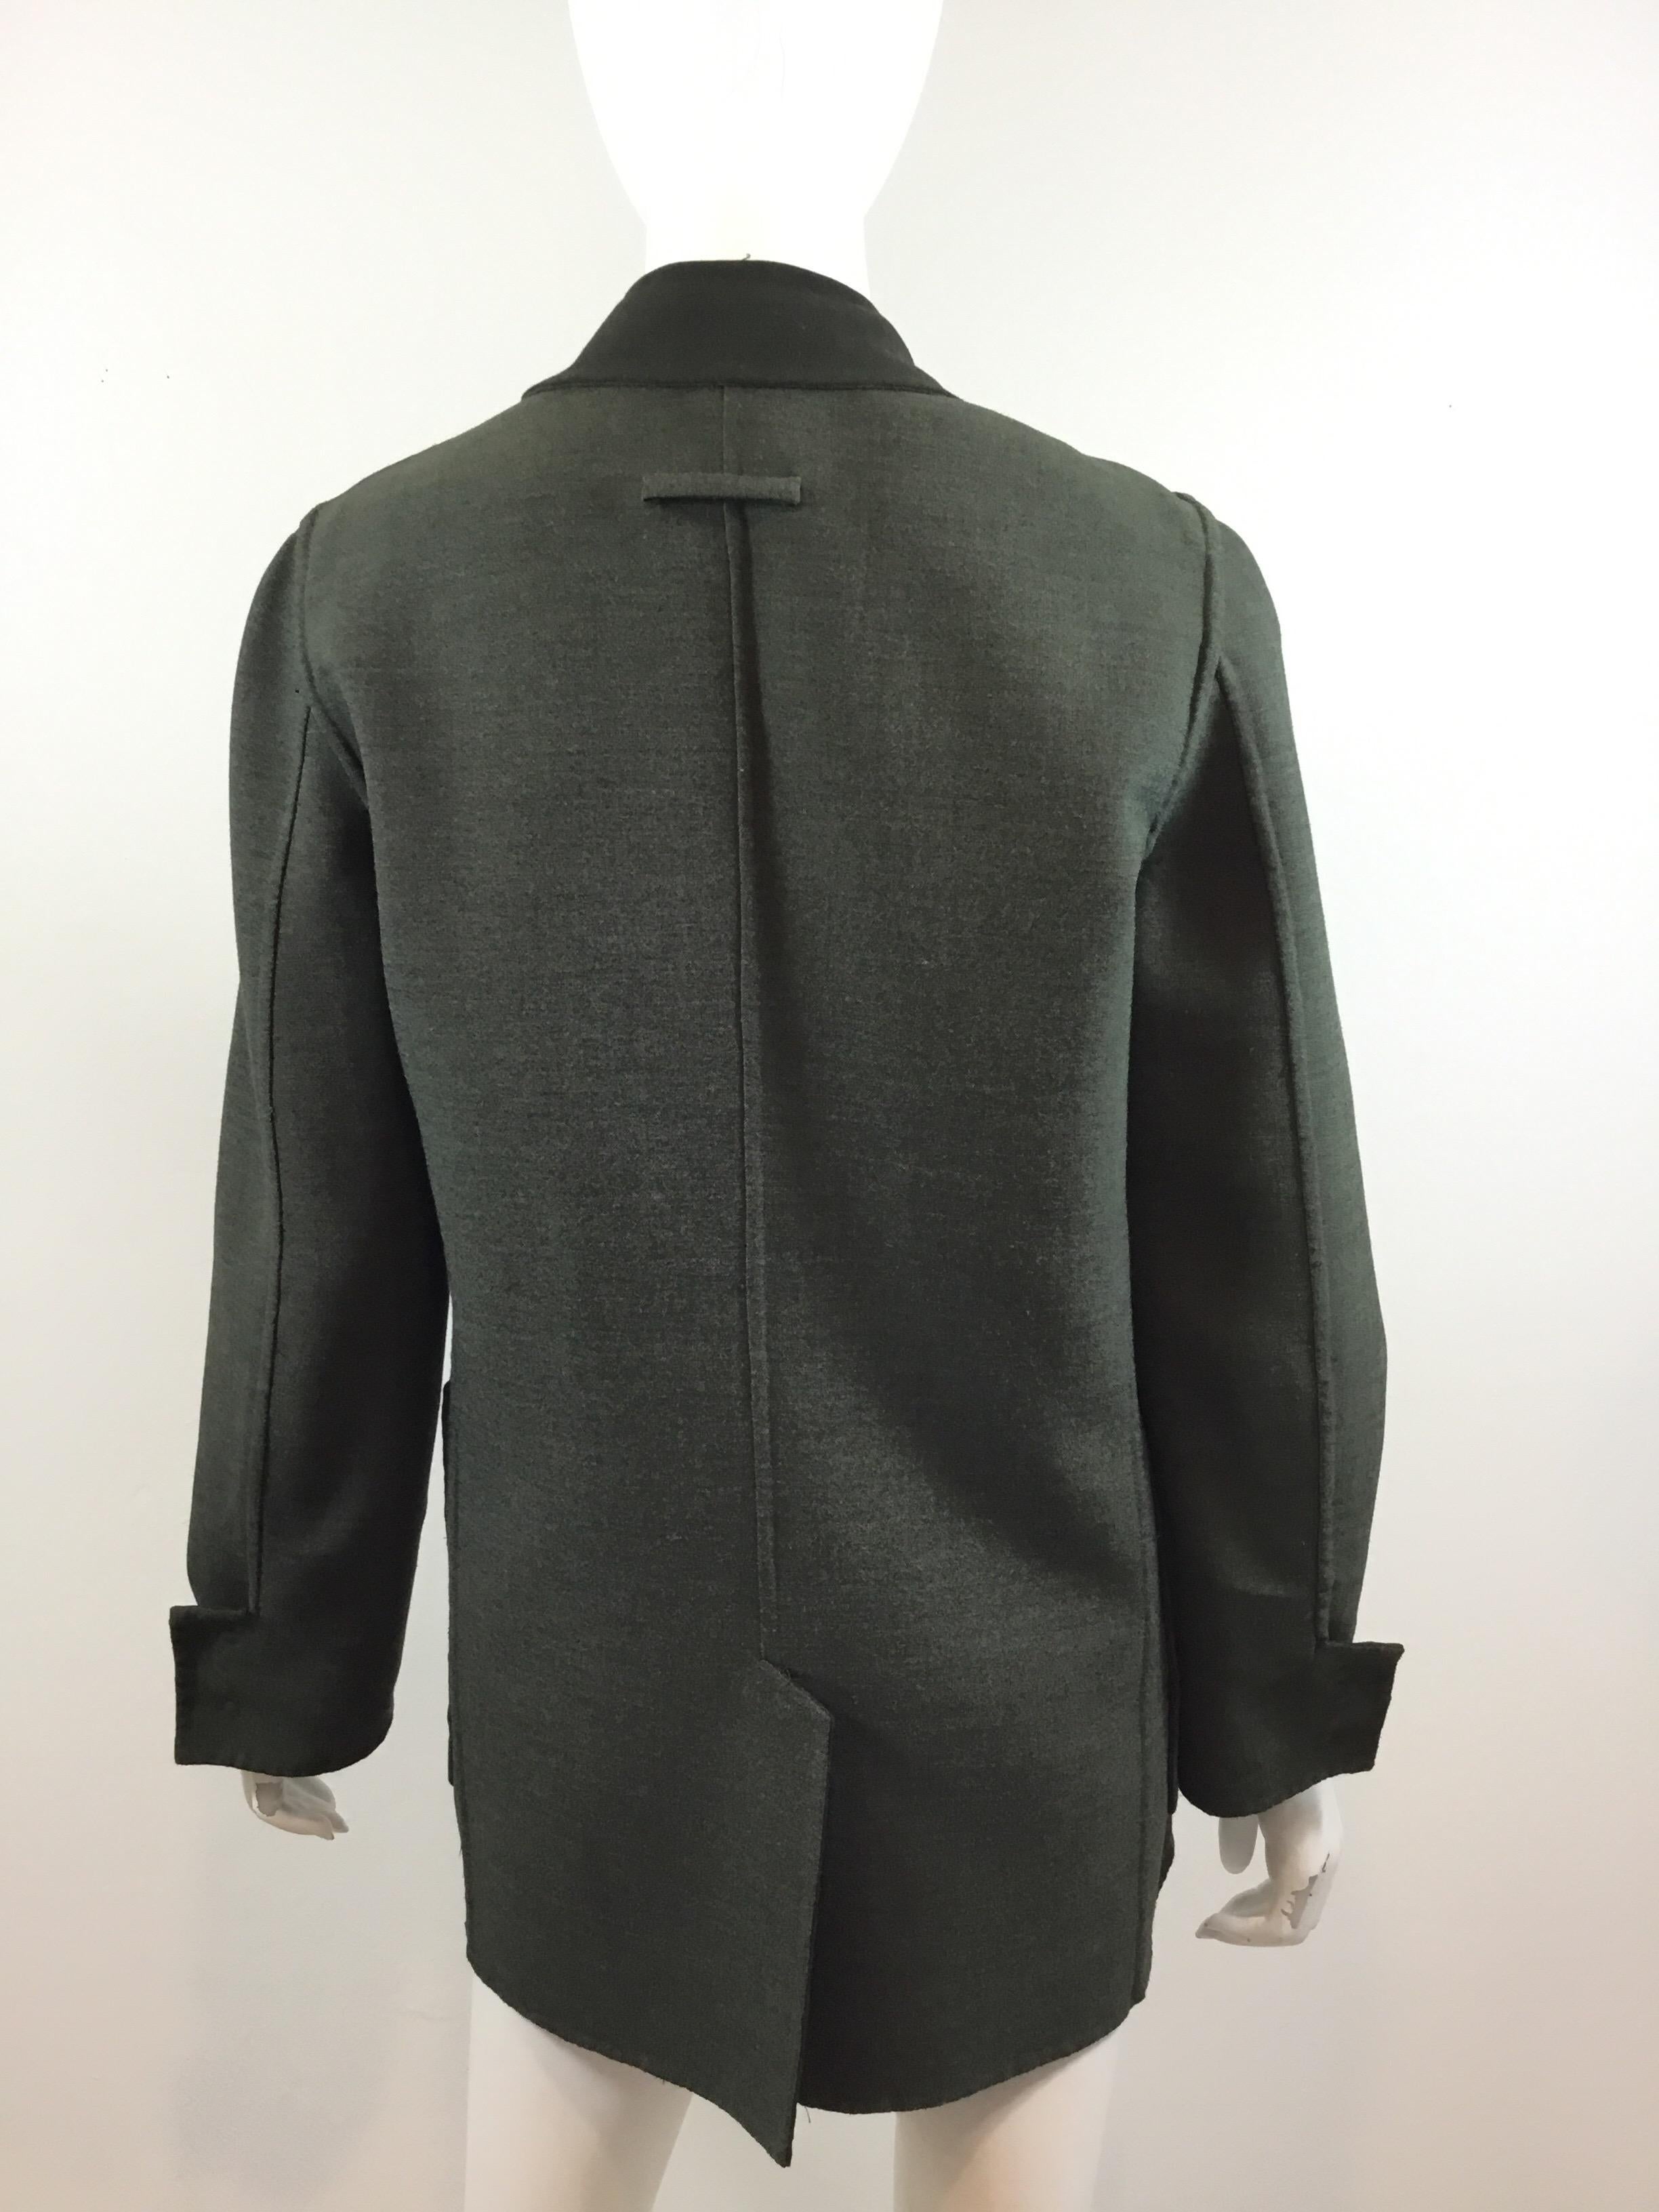 Jean Paul Gaultier Reversible Blazer Jacket In Good Condition In Carmel, CA